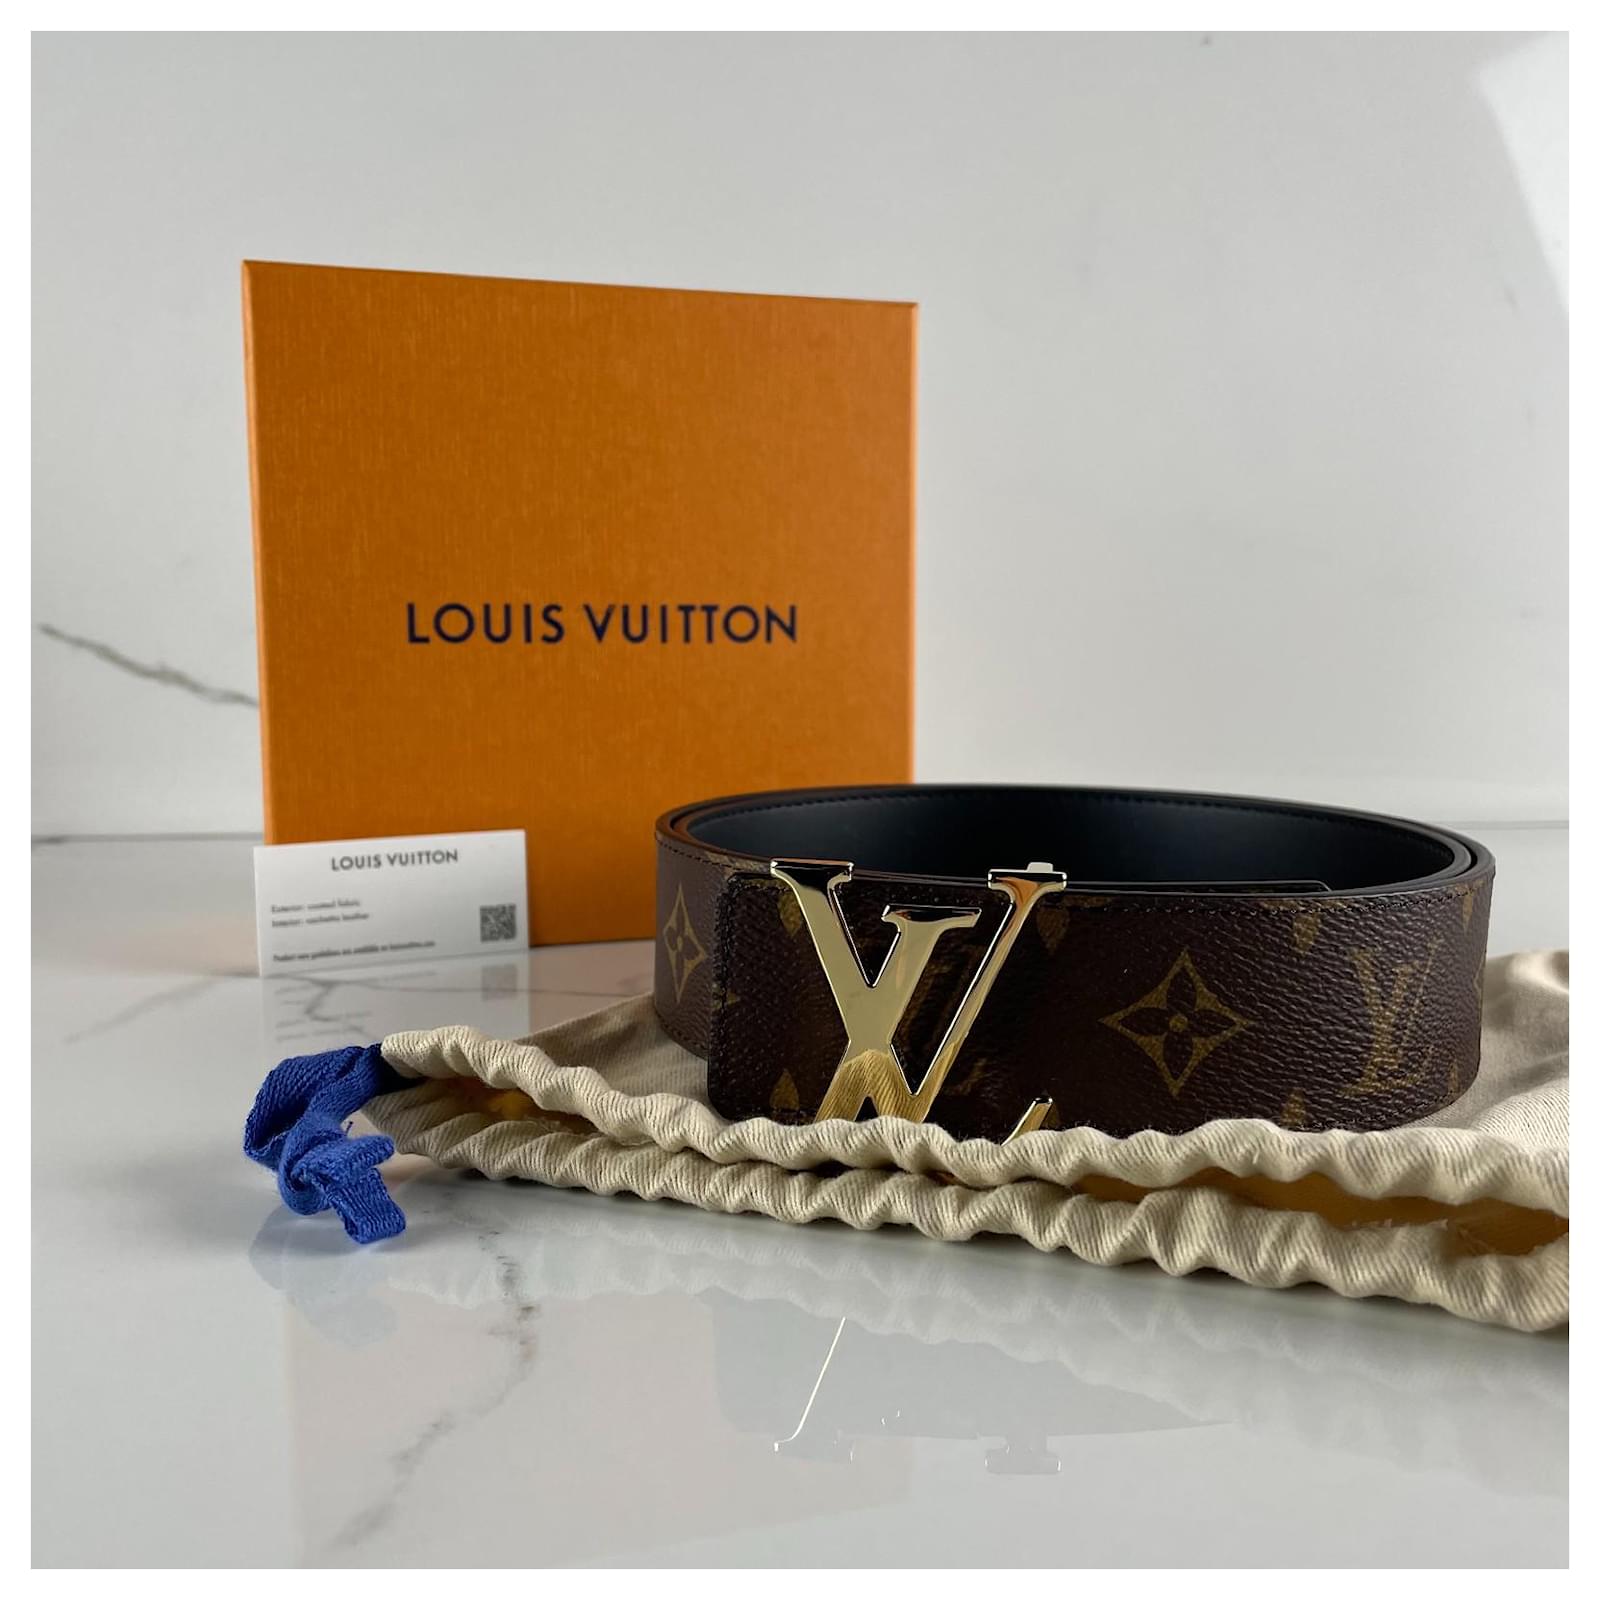 Louis Vuitton - LV Initials 40mm Reversible Belt - Monogram Canvas & Leather - Brown - Size: 90 cm - Luxury